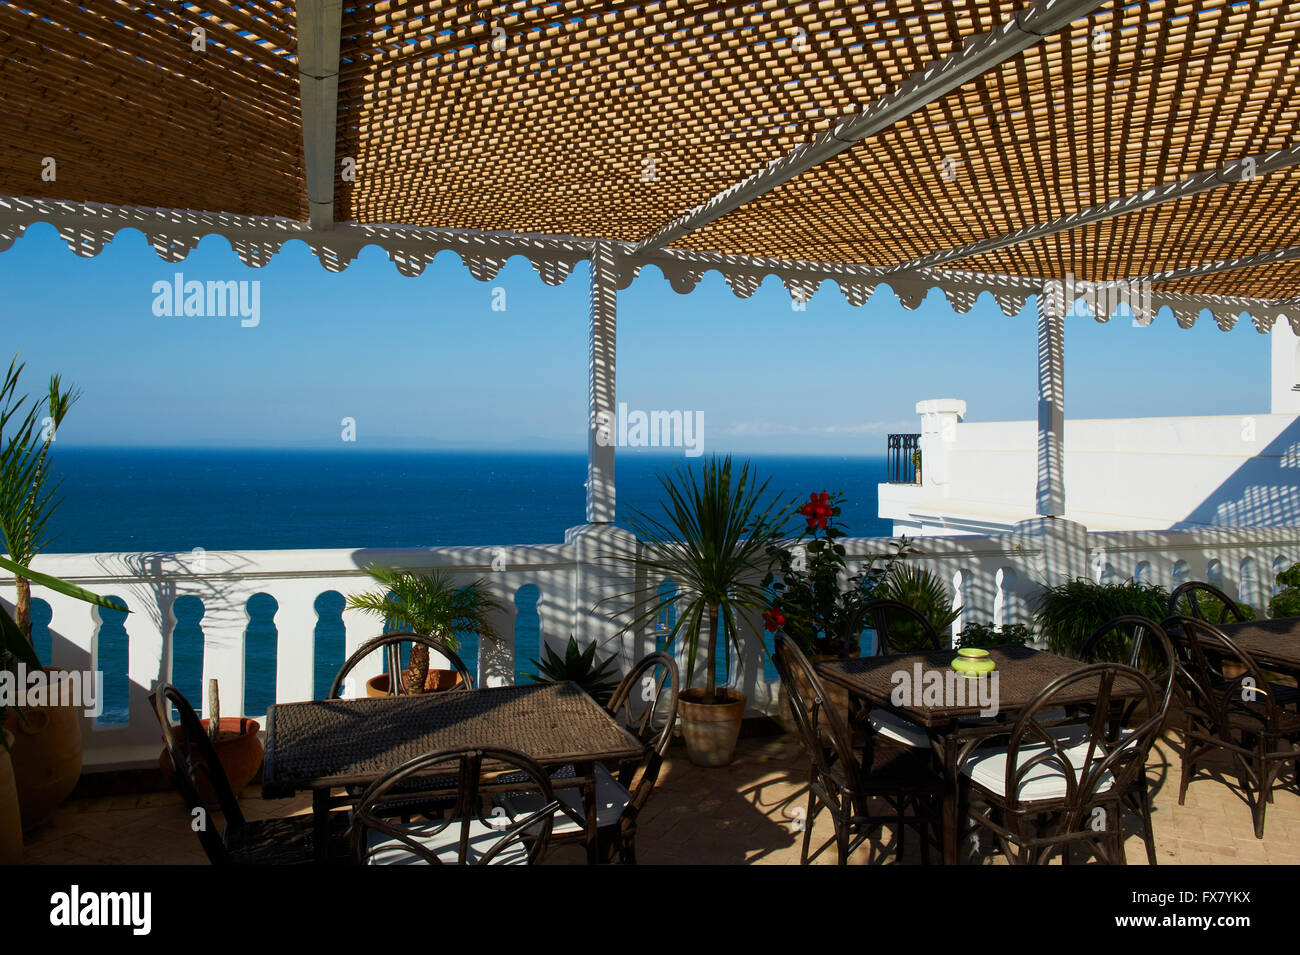 Morocco, Tangier La Tangerina hotel Kasbah, Stock Photo